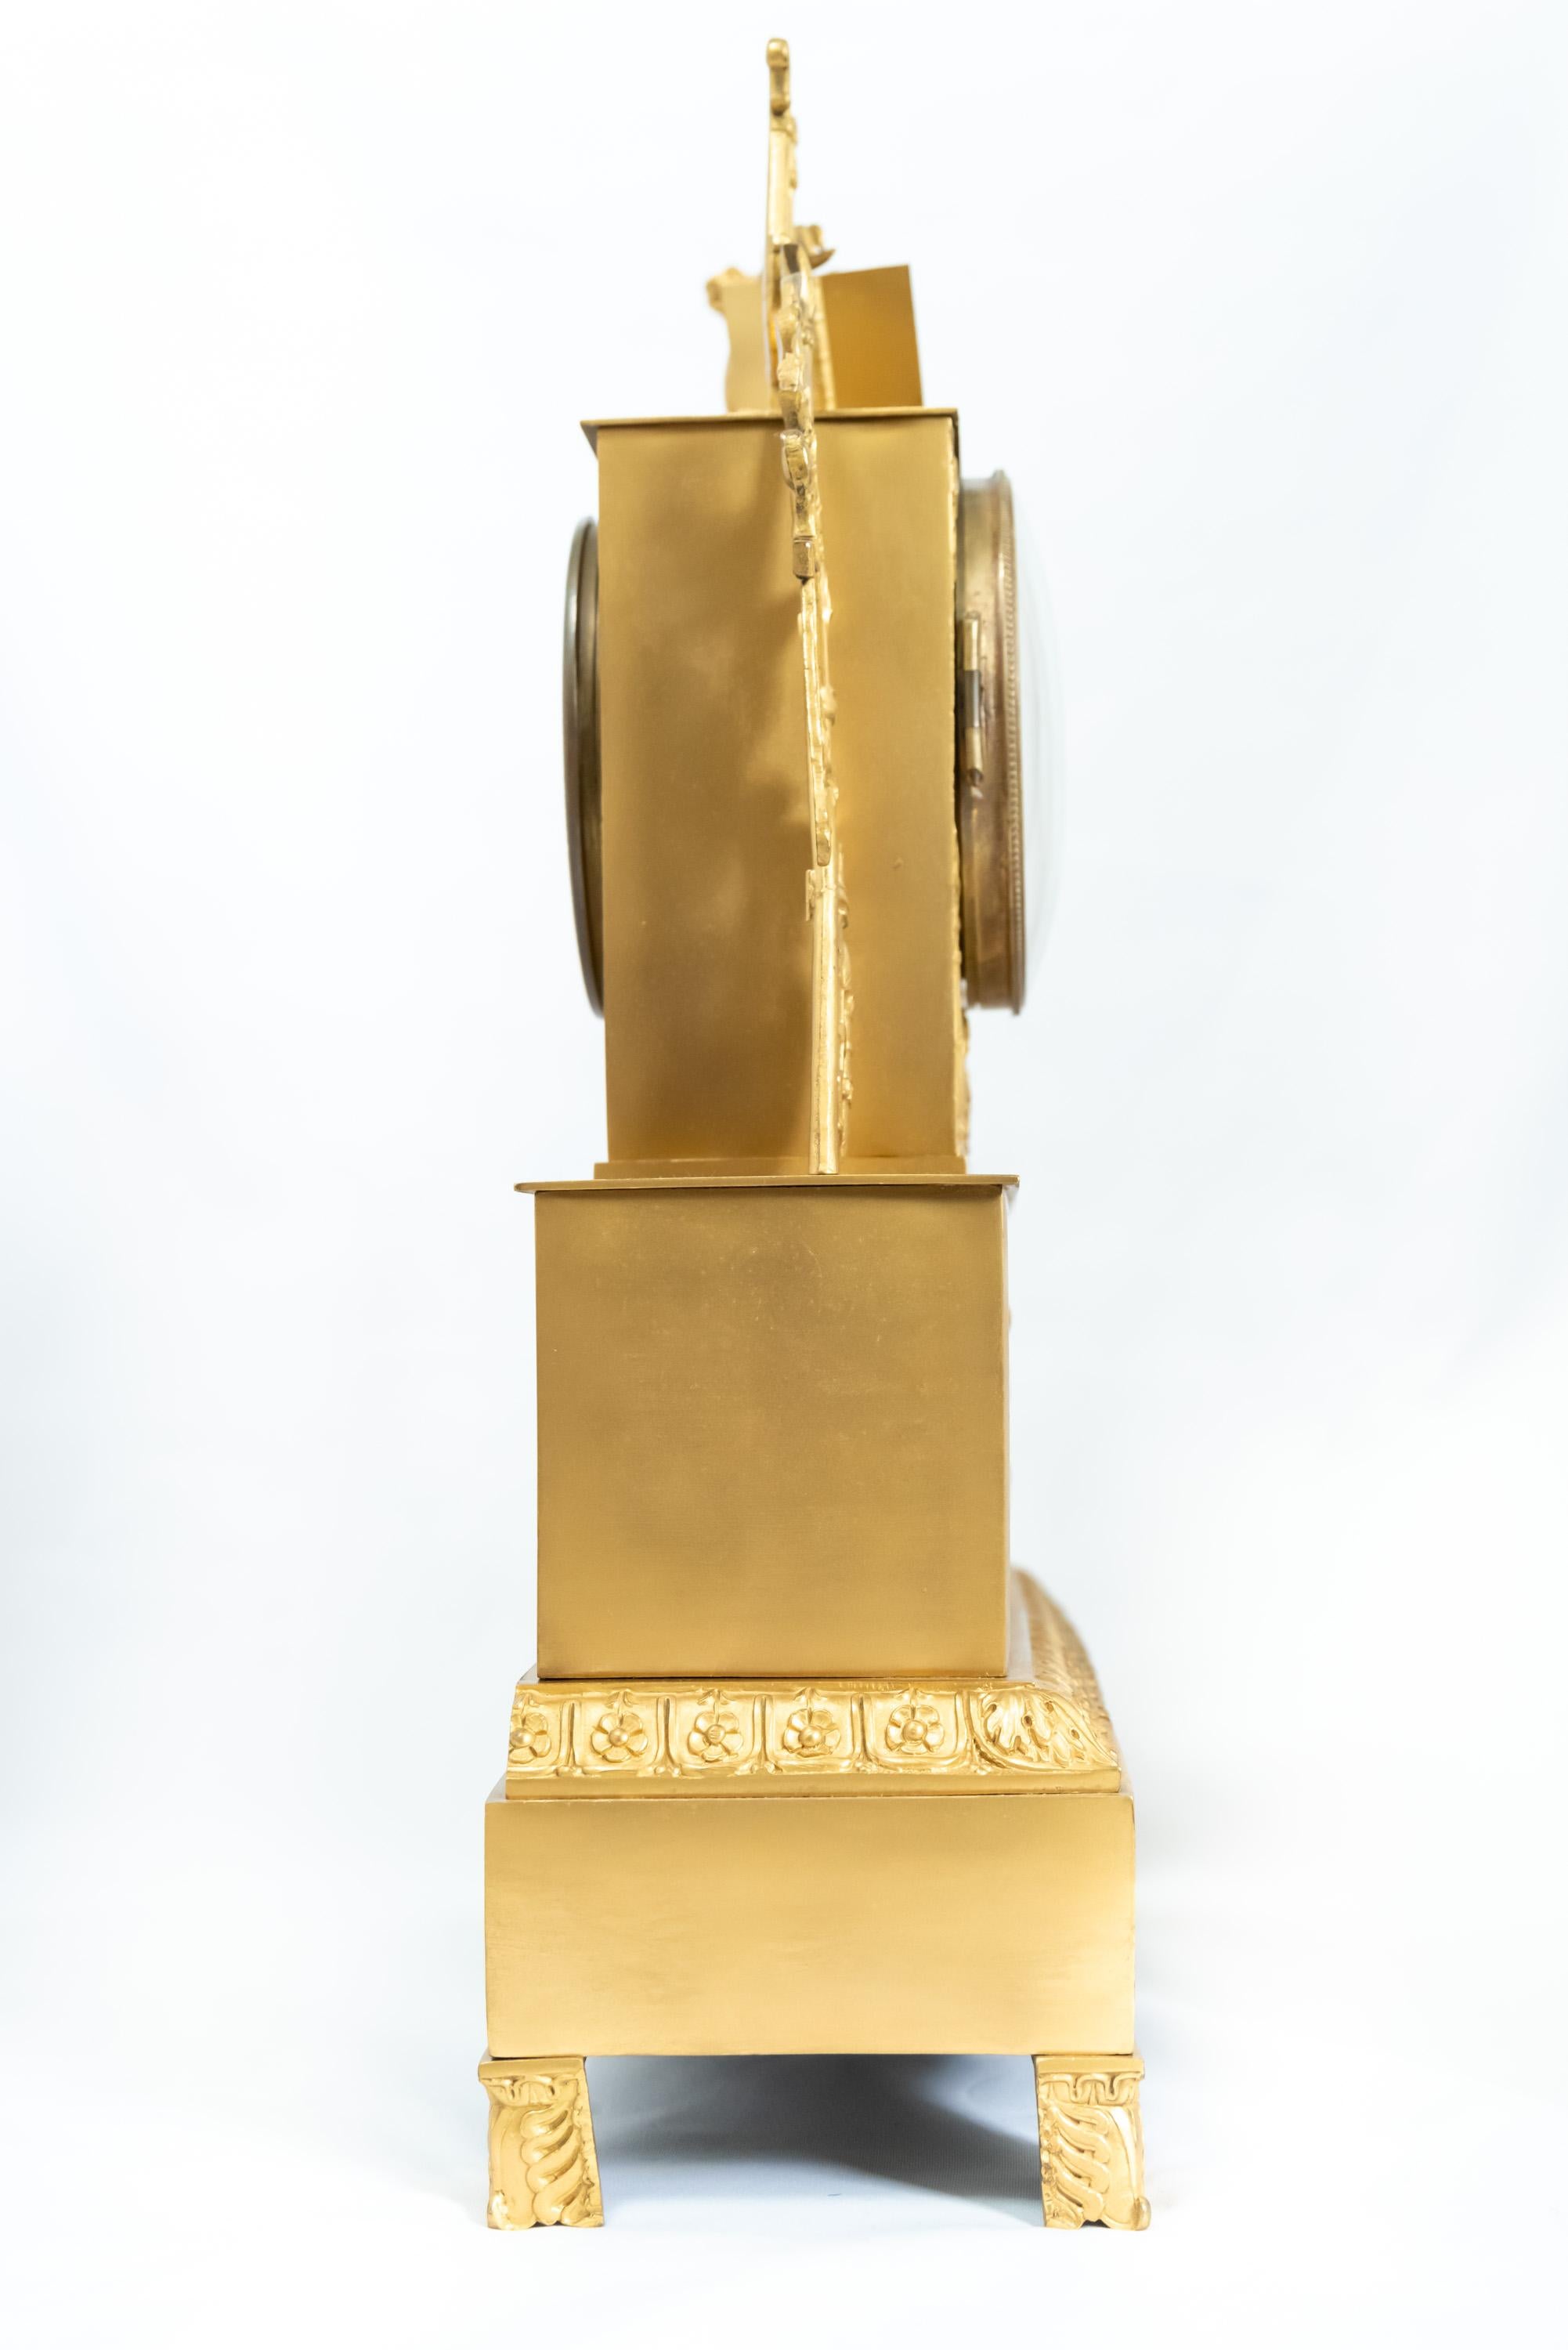 Pendule française en bronze doré représentant un personnage debout, époque Restauration, 1815-1830. Le mécanisme à fil de soie est en bon état de fonctionnement avec la clé et le pendule.